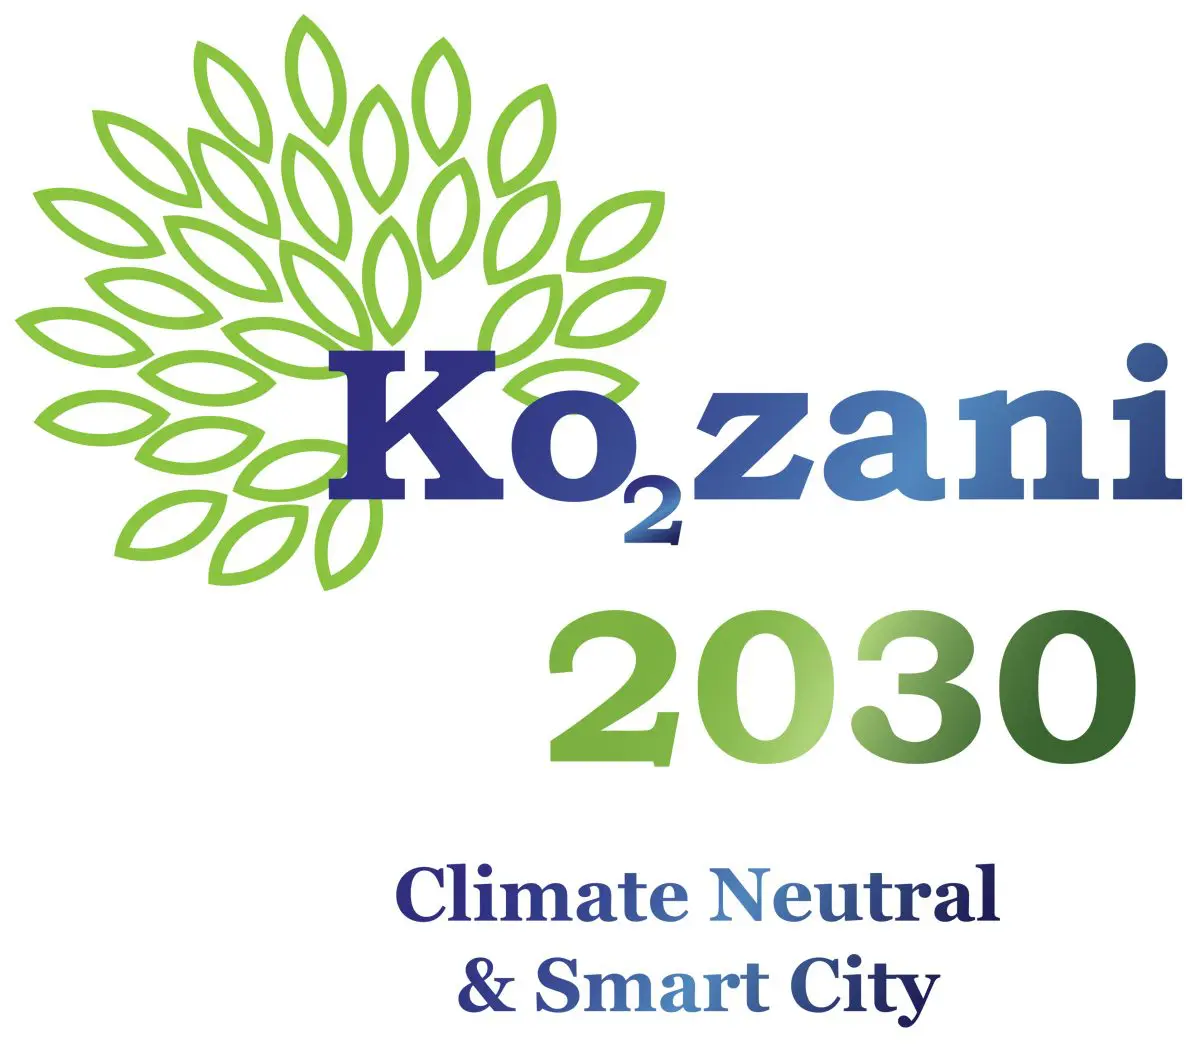 Άλμα στο μέλλον για την Κοζάνη: Αλλαγή στο αναπτυξιακό μοντέλο & ένταξη στις «100 Κλιματικά Ουδέτερες και Έξυπνες Ευρωπαϊκές Πόλεις μέχρι το 2030» – Το 1ο θεματικό εργαστήριο